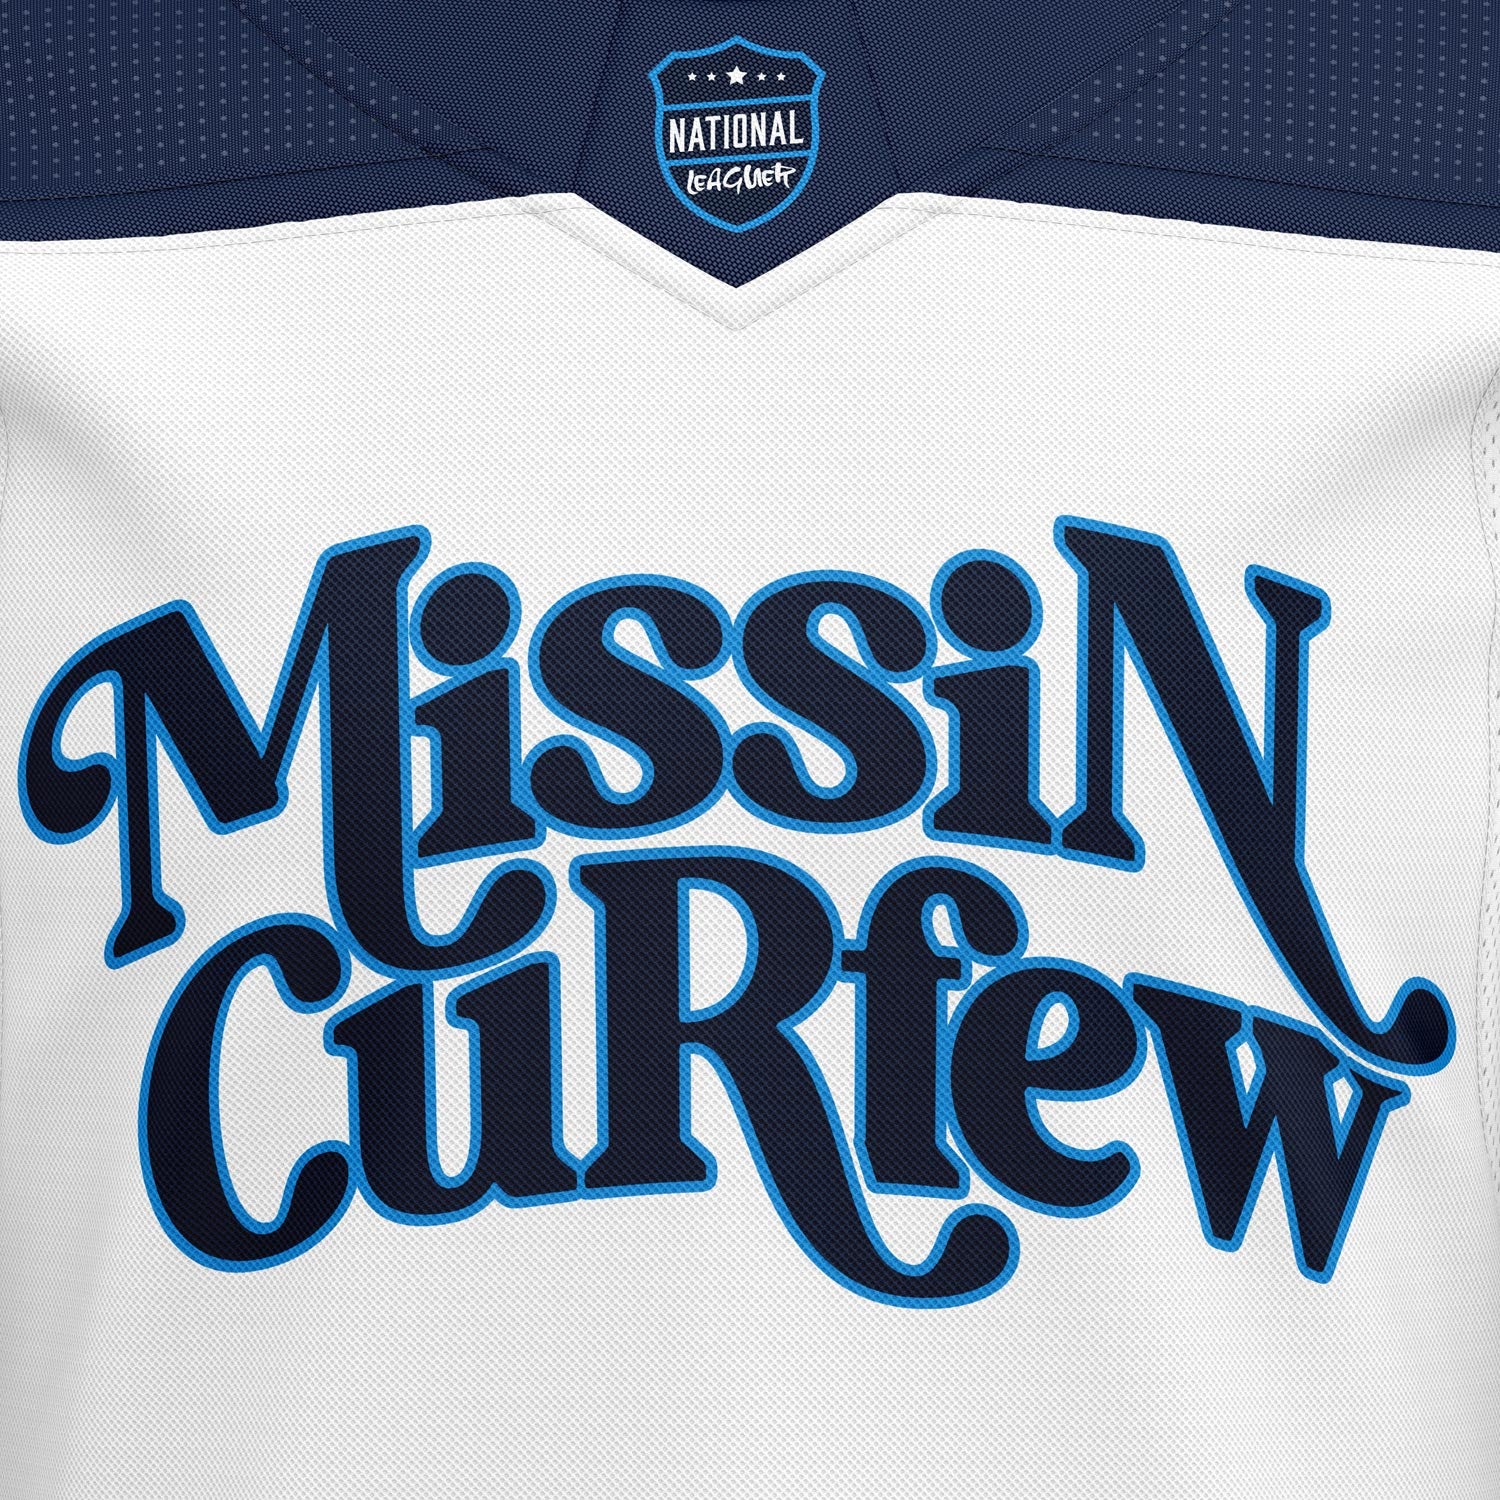 Missin Curfew on X: Best Retro #NHL All-Star Jerseys?? 1️⃣